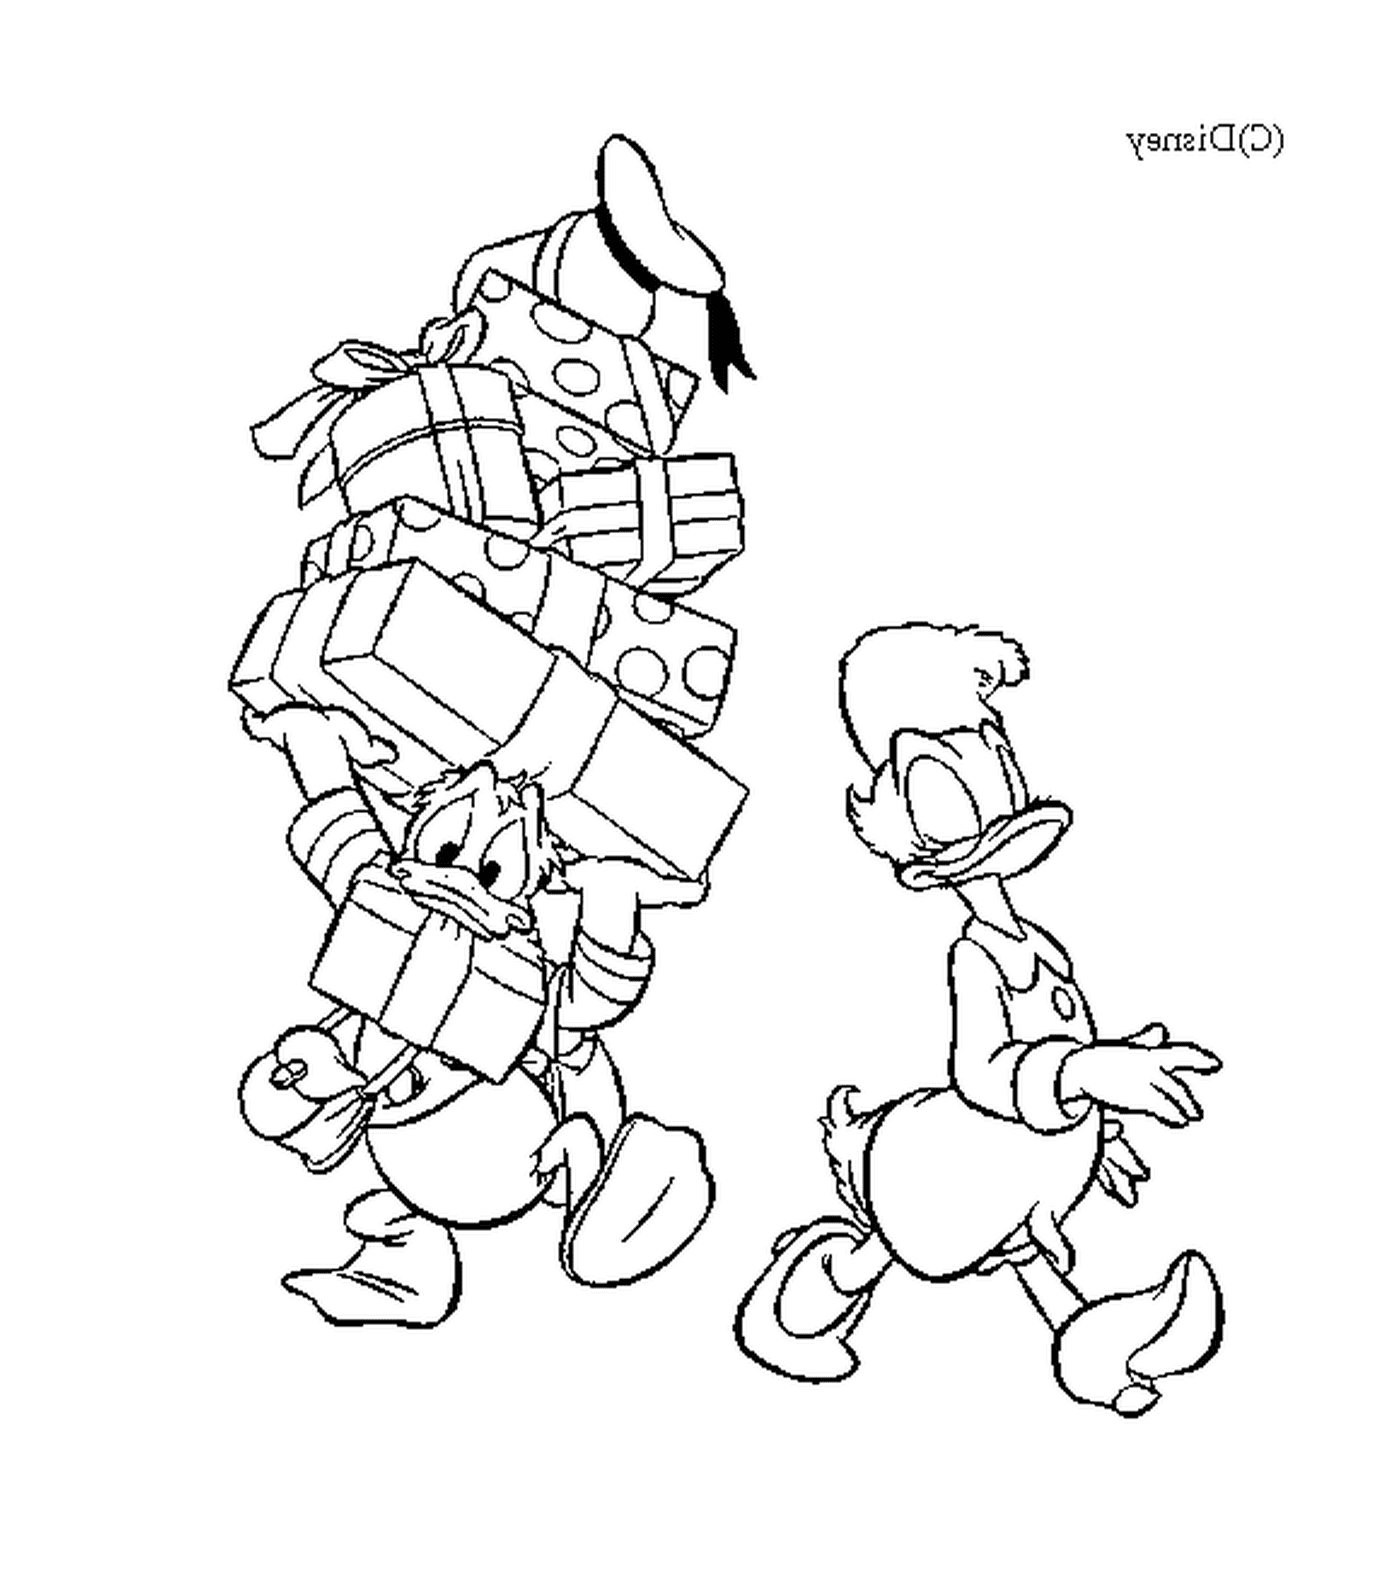  Donald hilft Daisy, die Geschenke zu tragen 